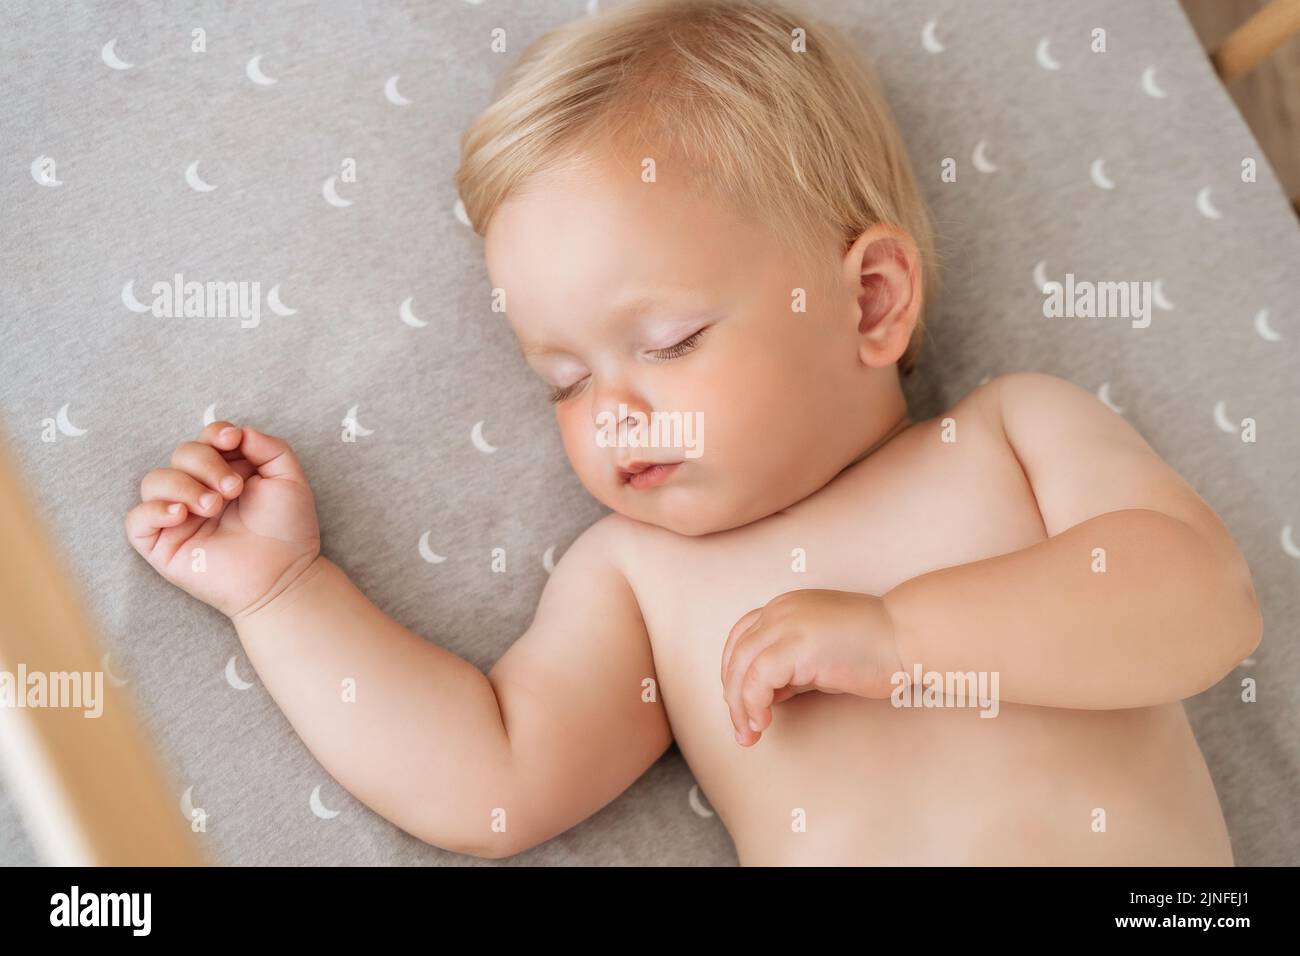 Nahaufnahme Porträt von entzückenden Baby Junge in seinem Bett nach aktiven spielen in seinem Schlafzimmer zu schlafen. Konzept für die Kinderbetreuung. Mittagsschlaf. Sicherer, gesunder Schlaf Stockfoto